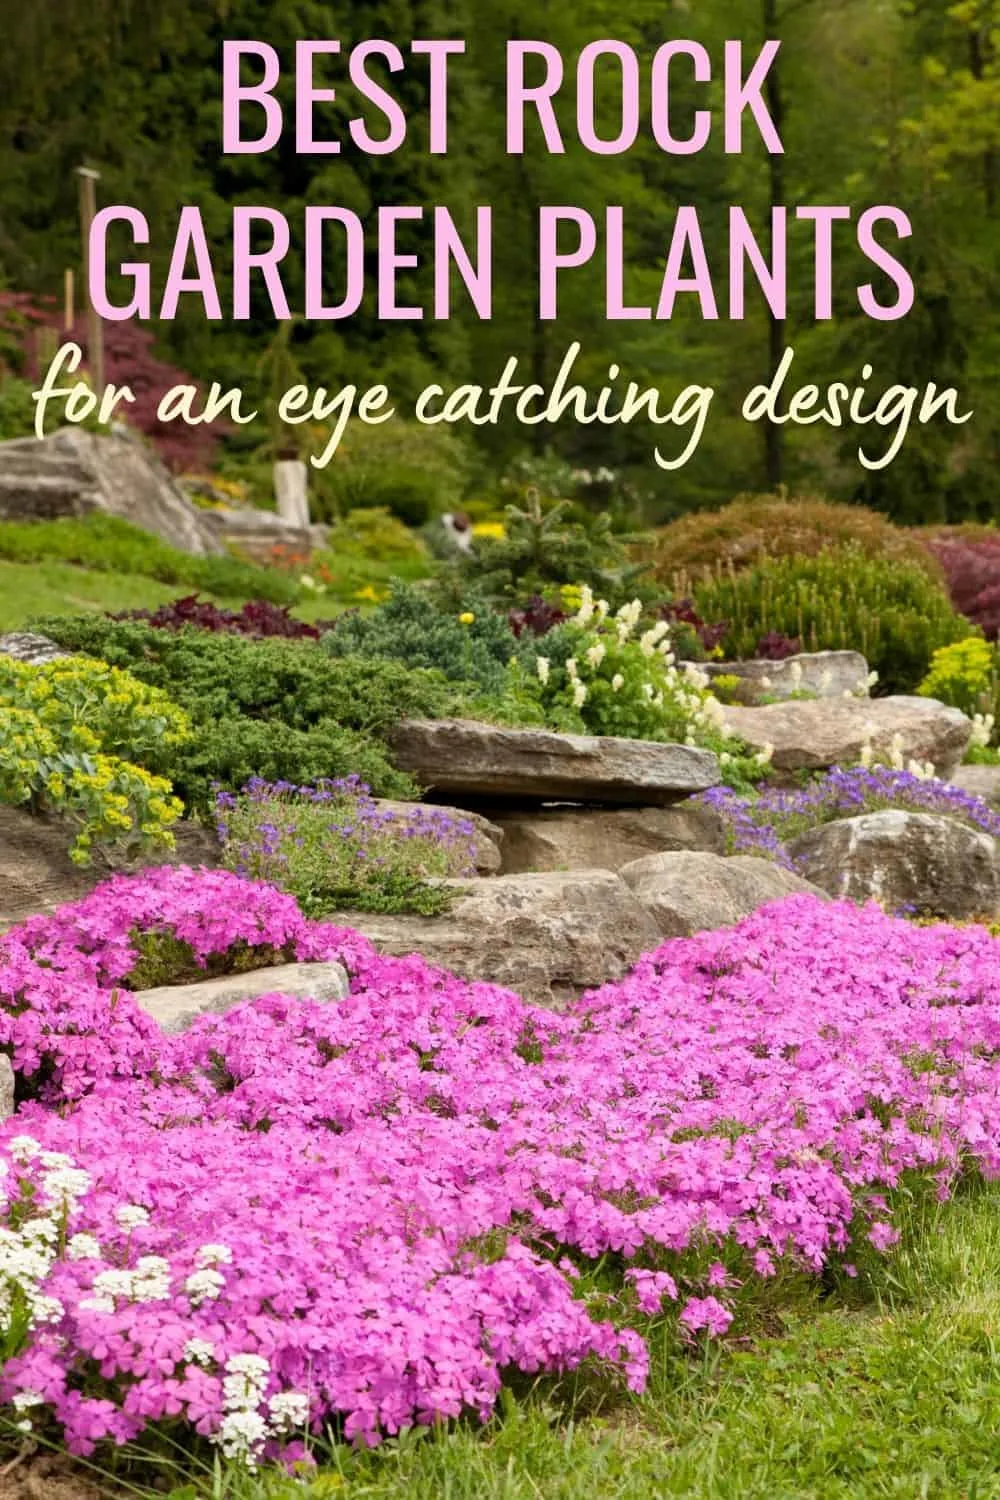 Best rock garden plants for an eye catching design